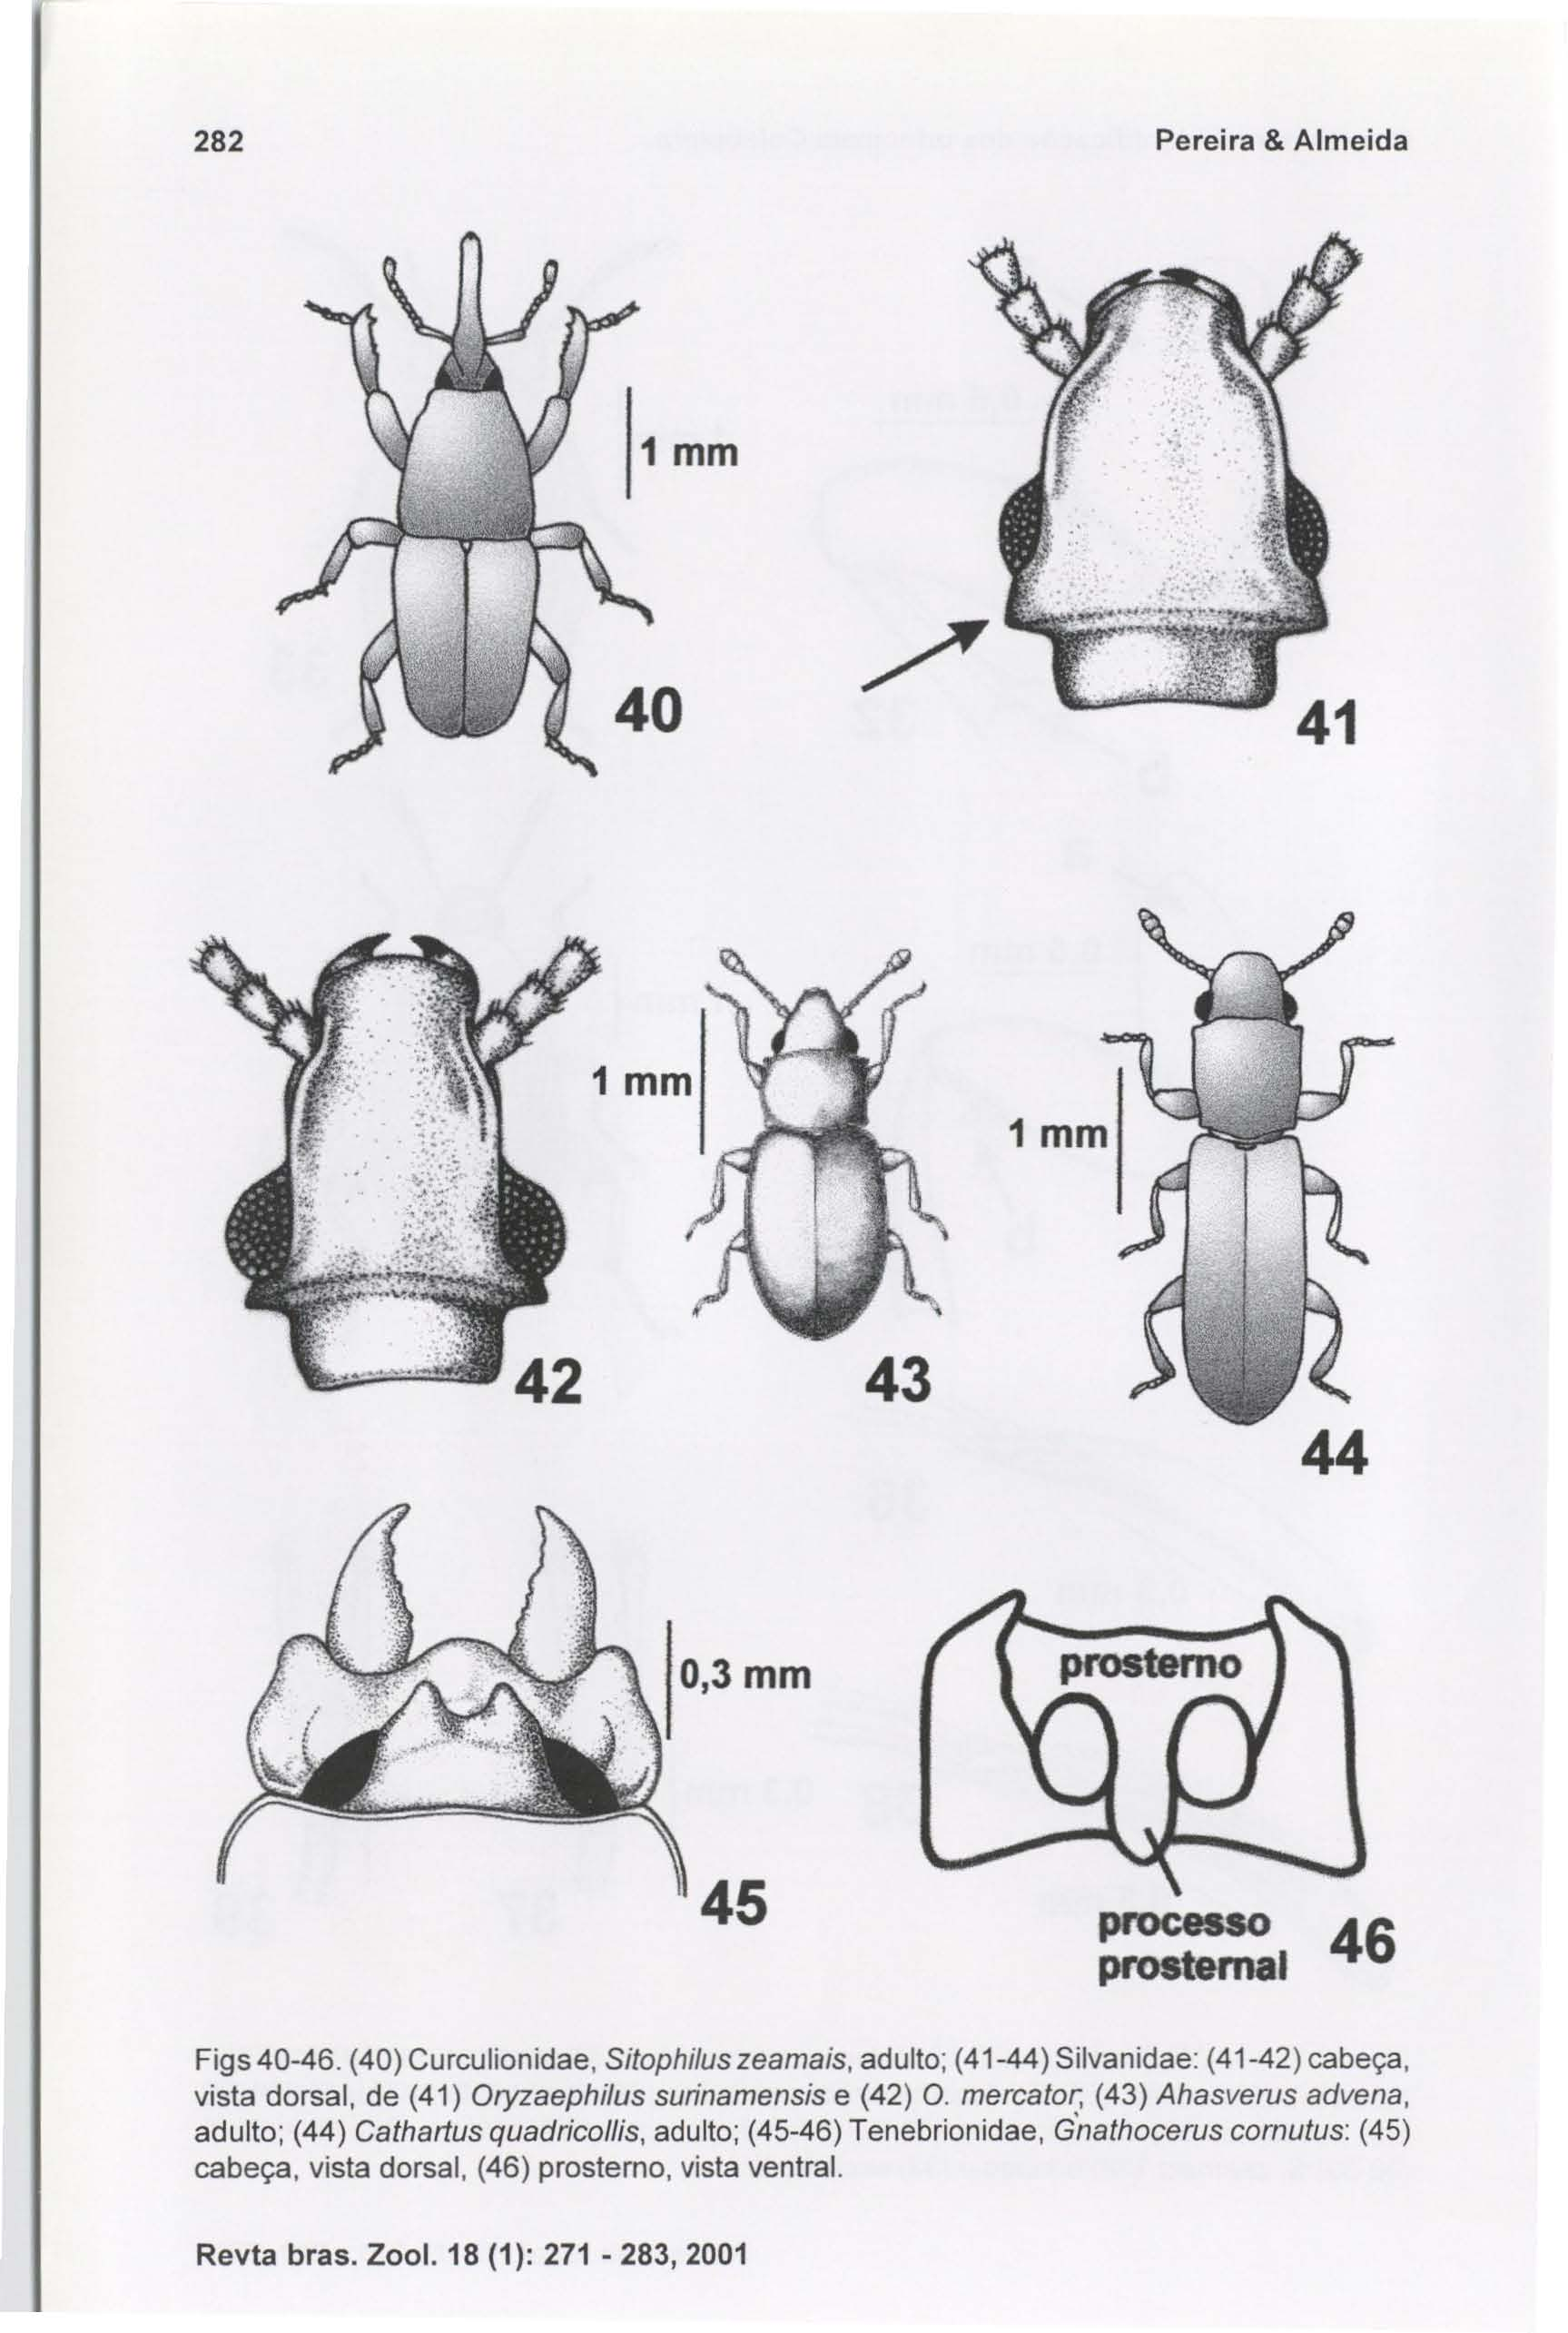 282 Pereira & Almeida processo 46 prosternai Figs 40-46. (40) Curculionidae, SitophiJus zeamais, adulto; (41-44) Silvanidae: (41-42) cabeça, vista dorsal, de (41) Oryzaephilus surinamensis e (42) O.